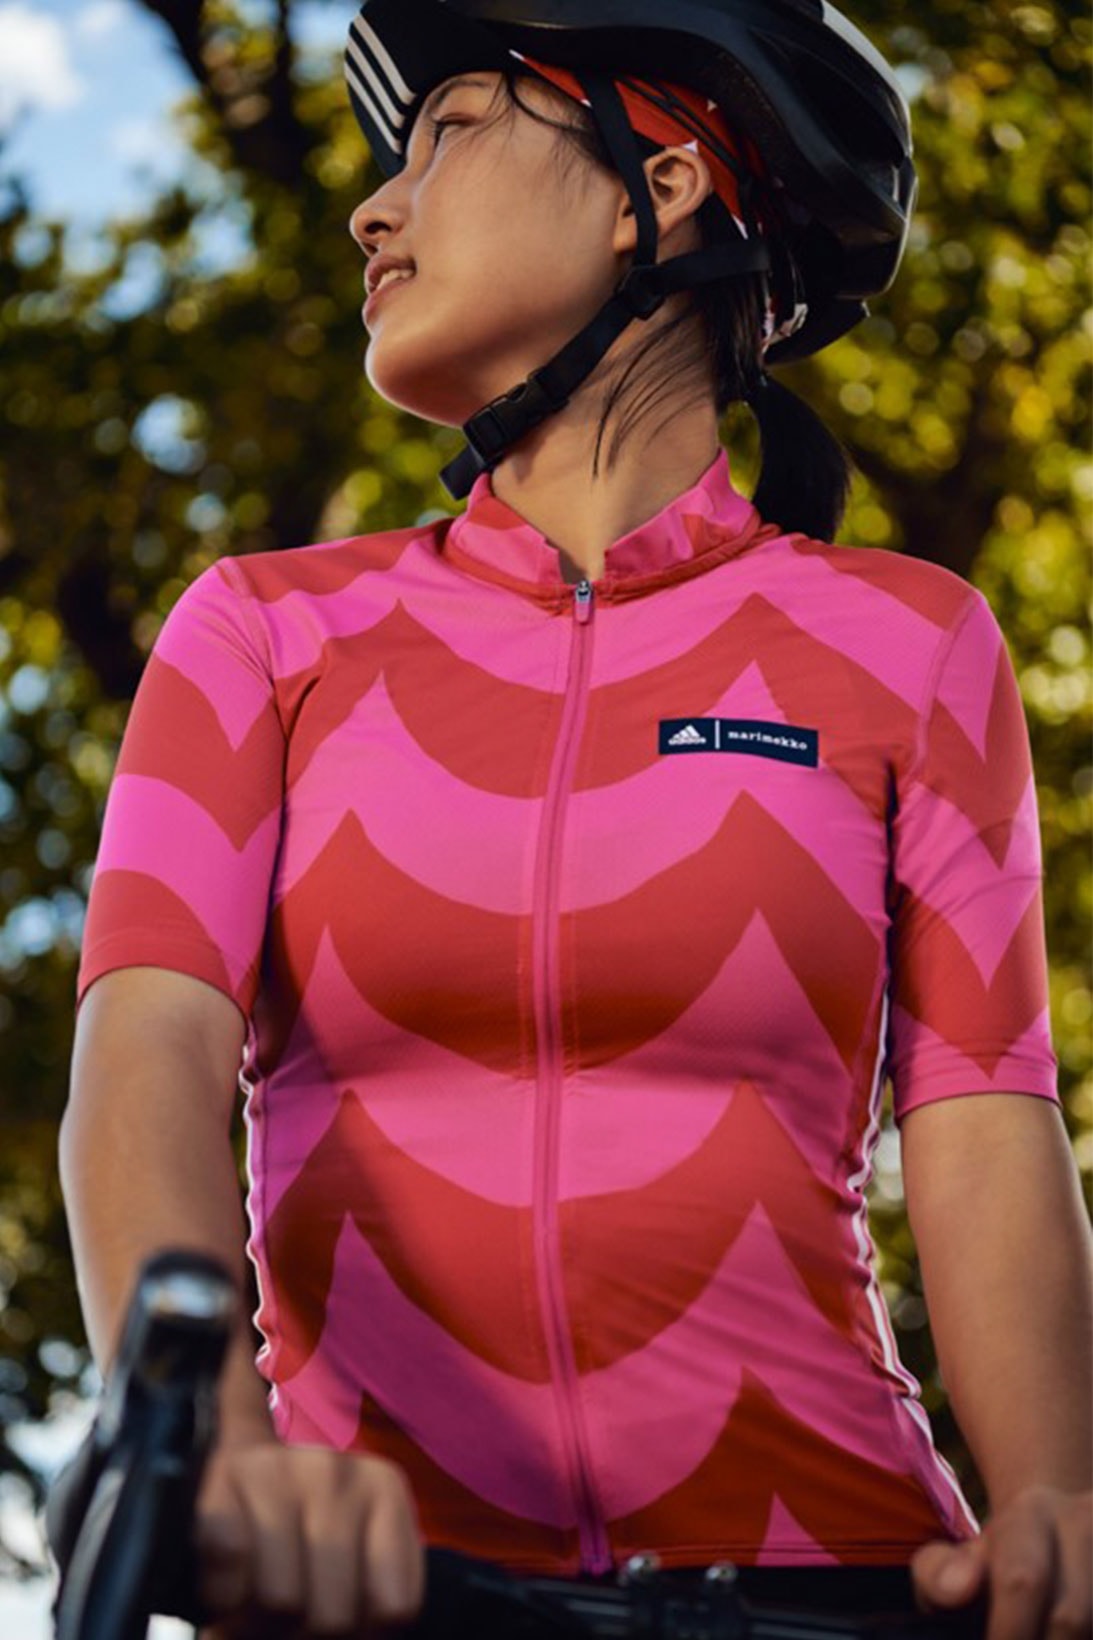 marimekko adidas activewear collaboration cycling top zip up